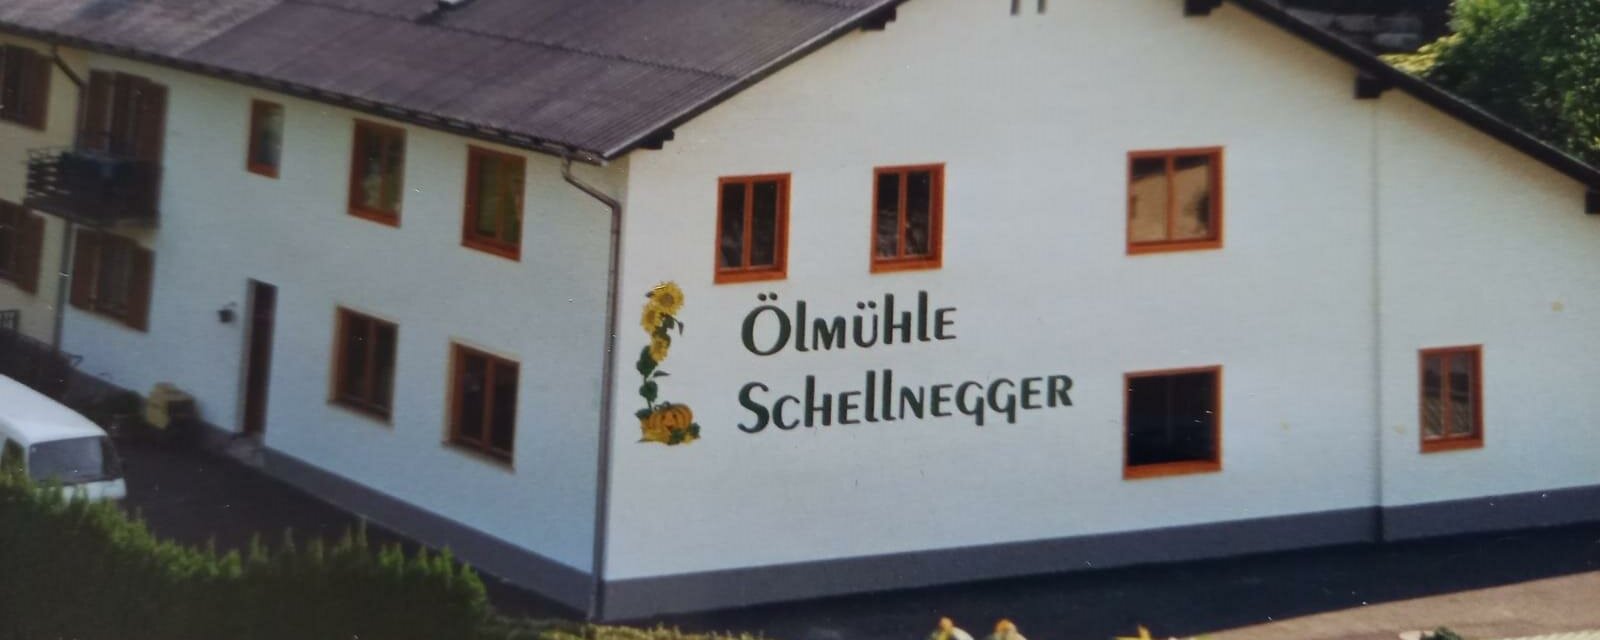 Oilmill Schellnegger_from outside_Eastern Styria | © Ölmühle Schellnegger